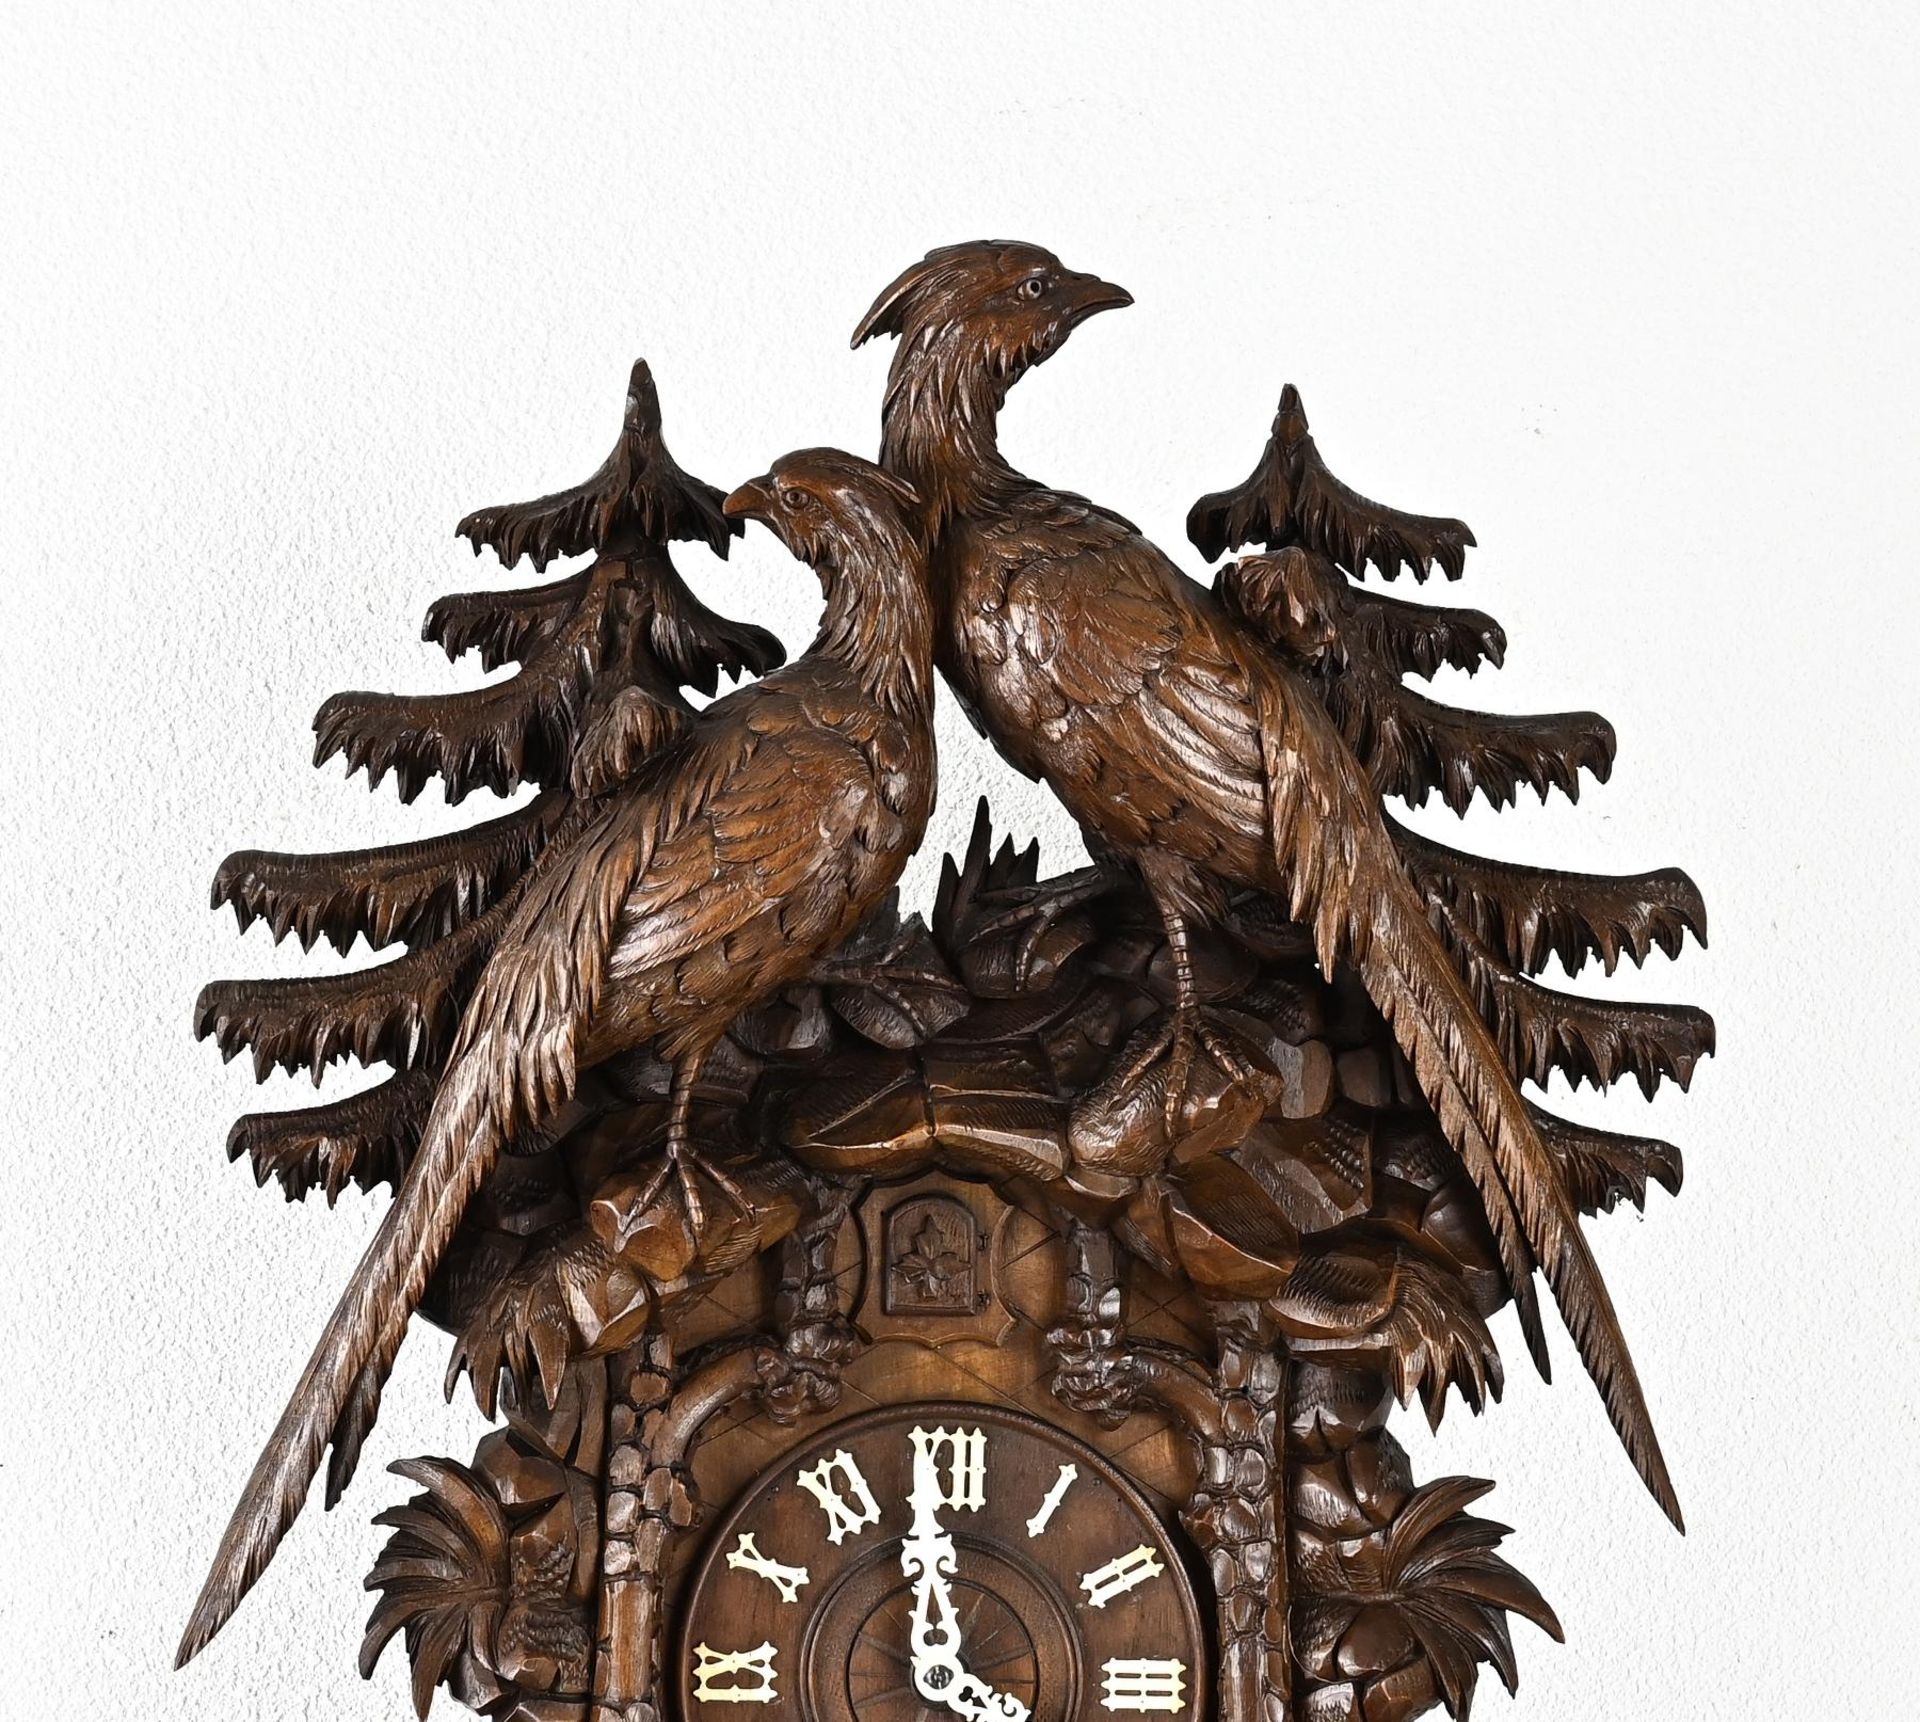 Large Schwarzwalder cuckoo clock, 83 cm. - Image 3 of 3